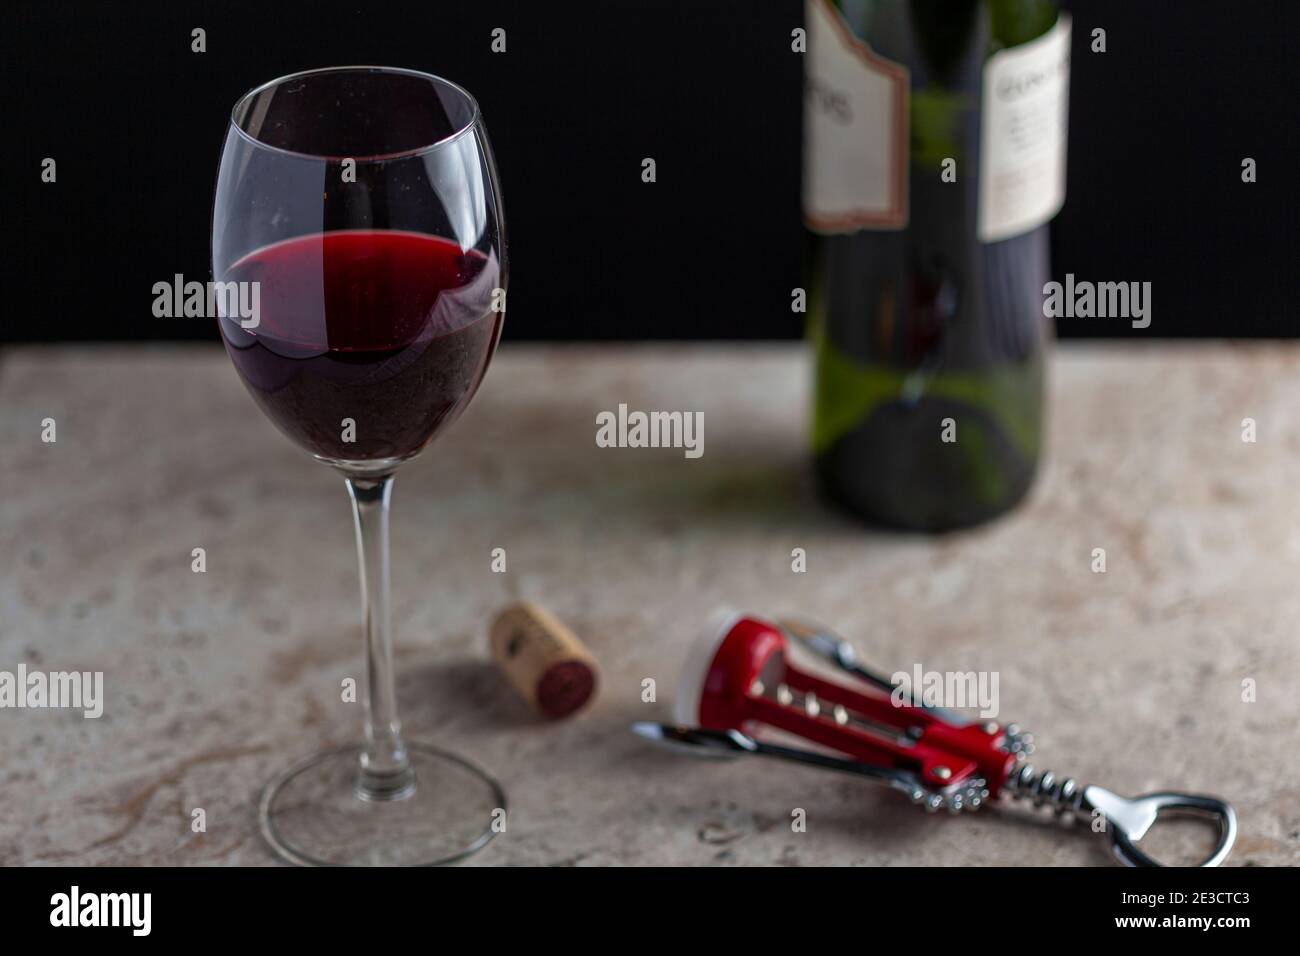 Immagine di un bicchiere di vino di dimensioni standard con vino rosso riempito a metà strada. Sul piano di marmo è presente un cavatappi con un sughero affiancato. Un gr Foto Stock